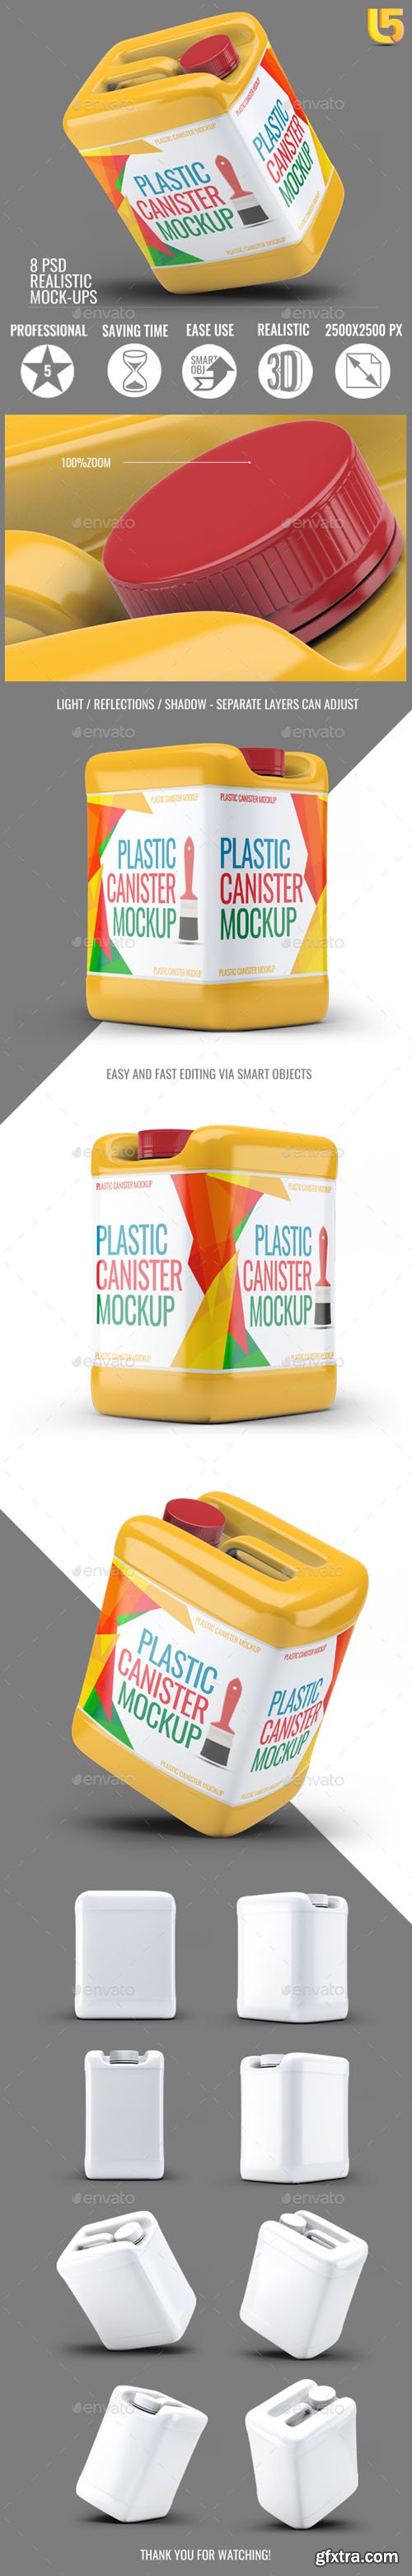 GR - Plastic Canister Mock-Up 21074422